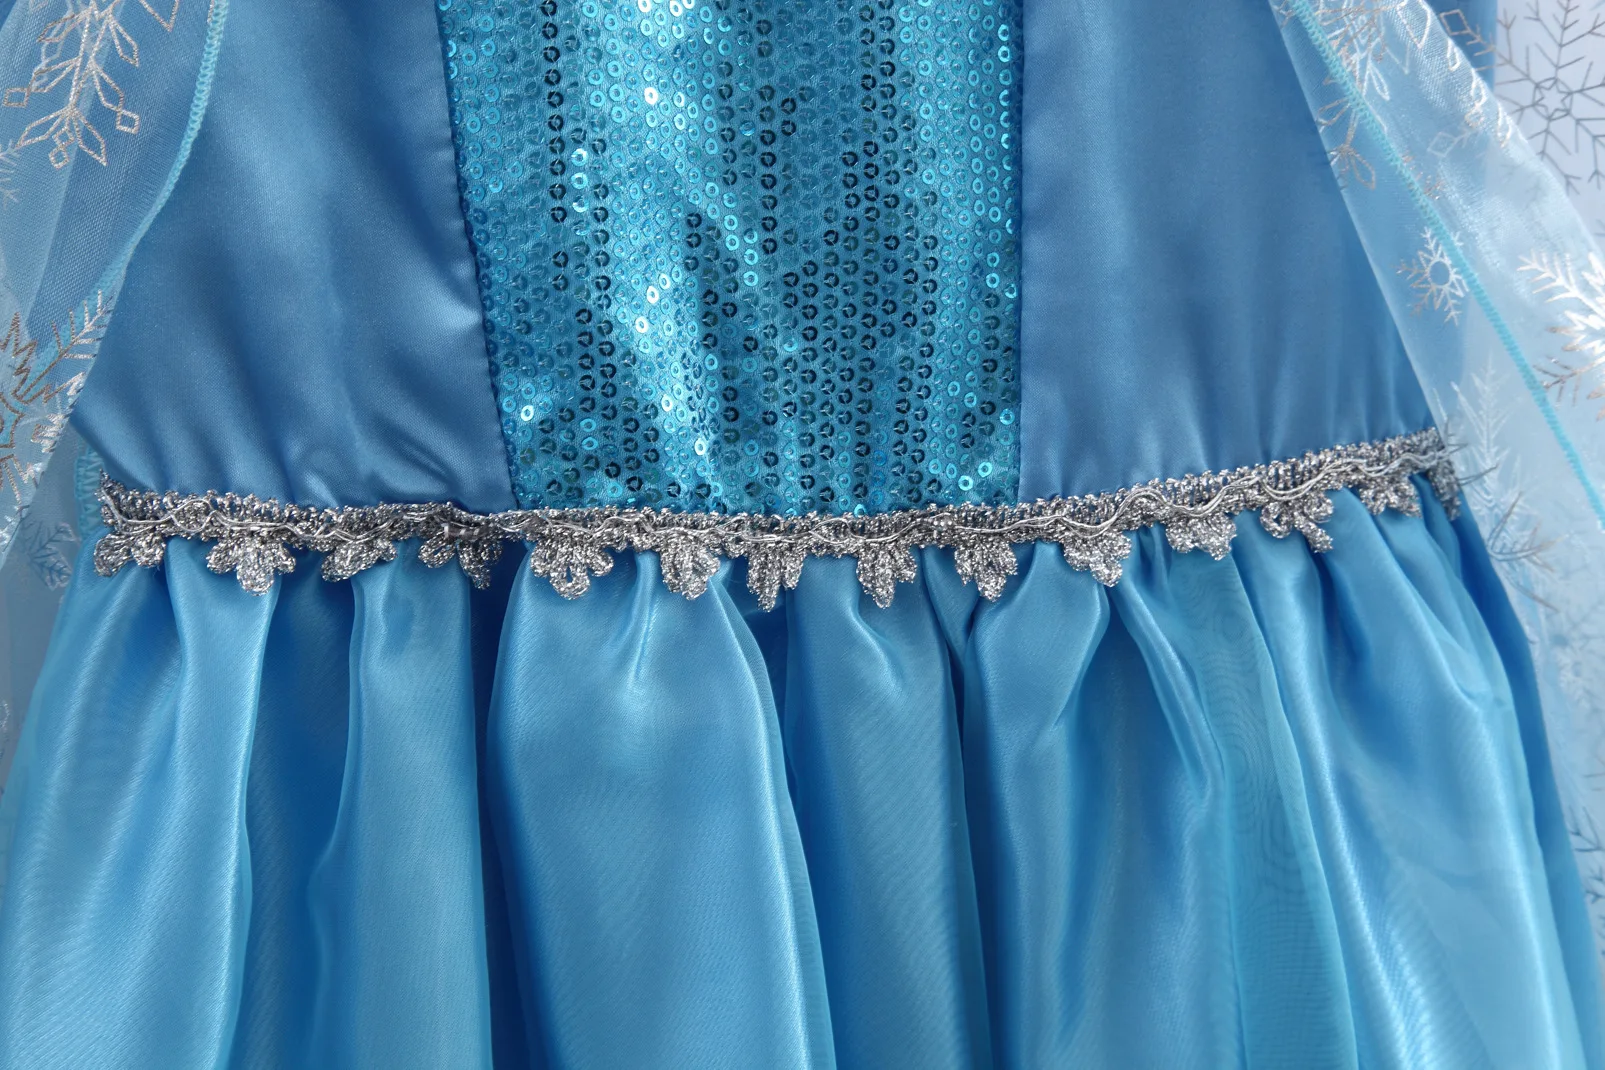 Новое платье принцессы Эльзы; платья для девочек; костюмы для детей; нарядные вечерние платья Анны; Карнавальная одежда для маленьких девочек